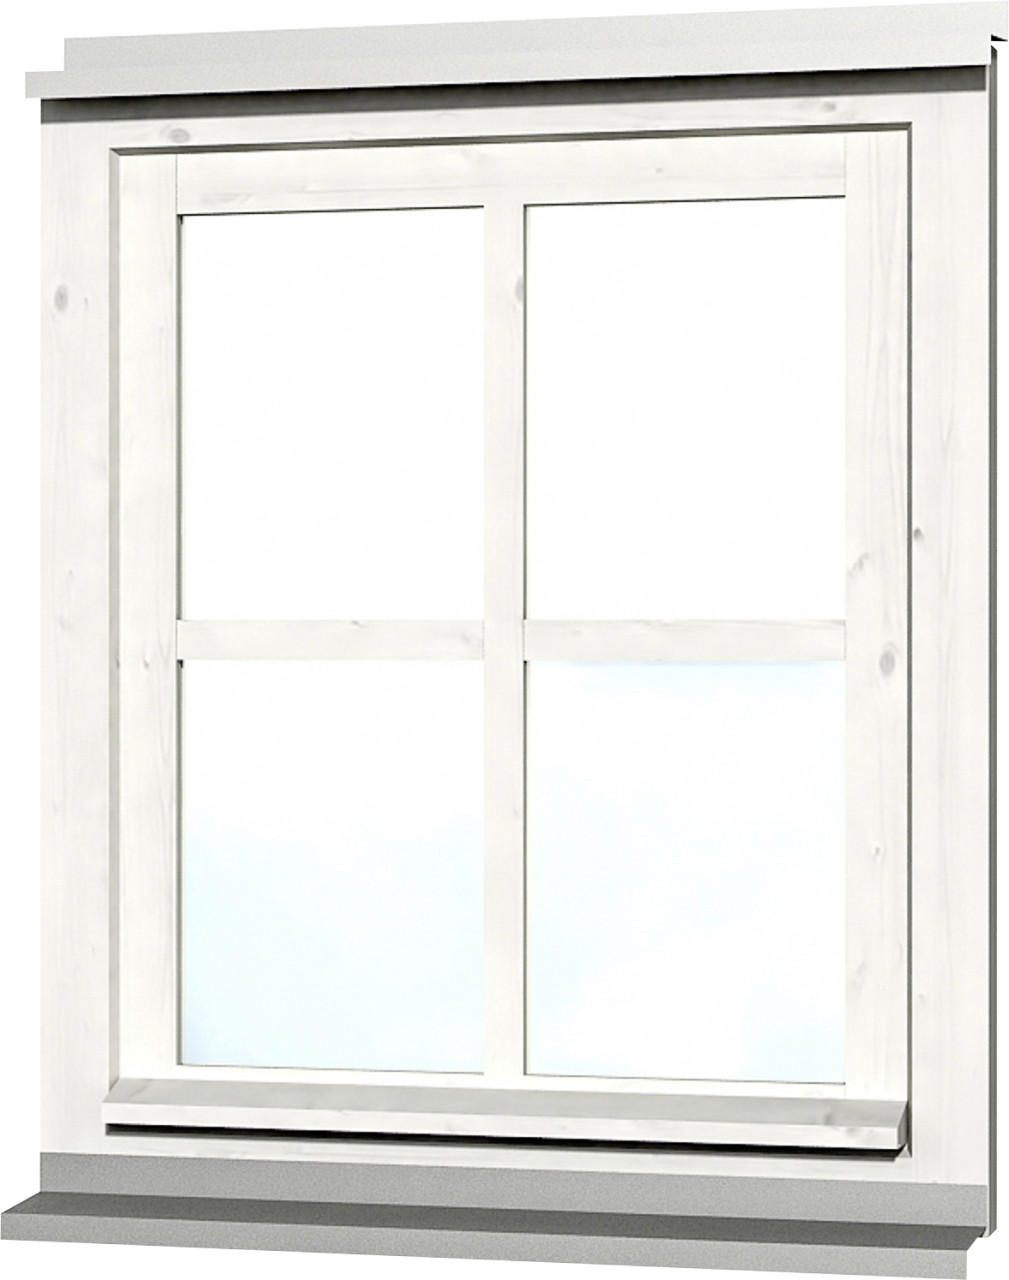 SKAN HOLZ Einzelfenster Rahmenaußenmaß 69,1 x 82,1 cm lasiert in Weiß von SkanHolz